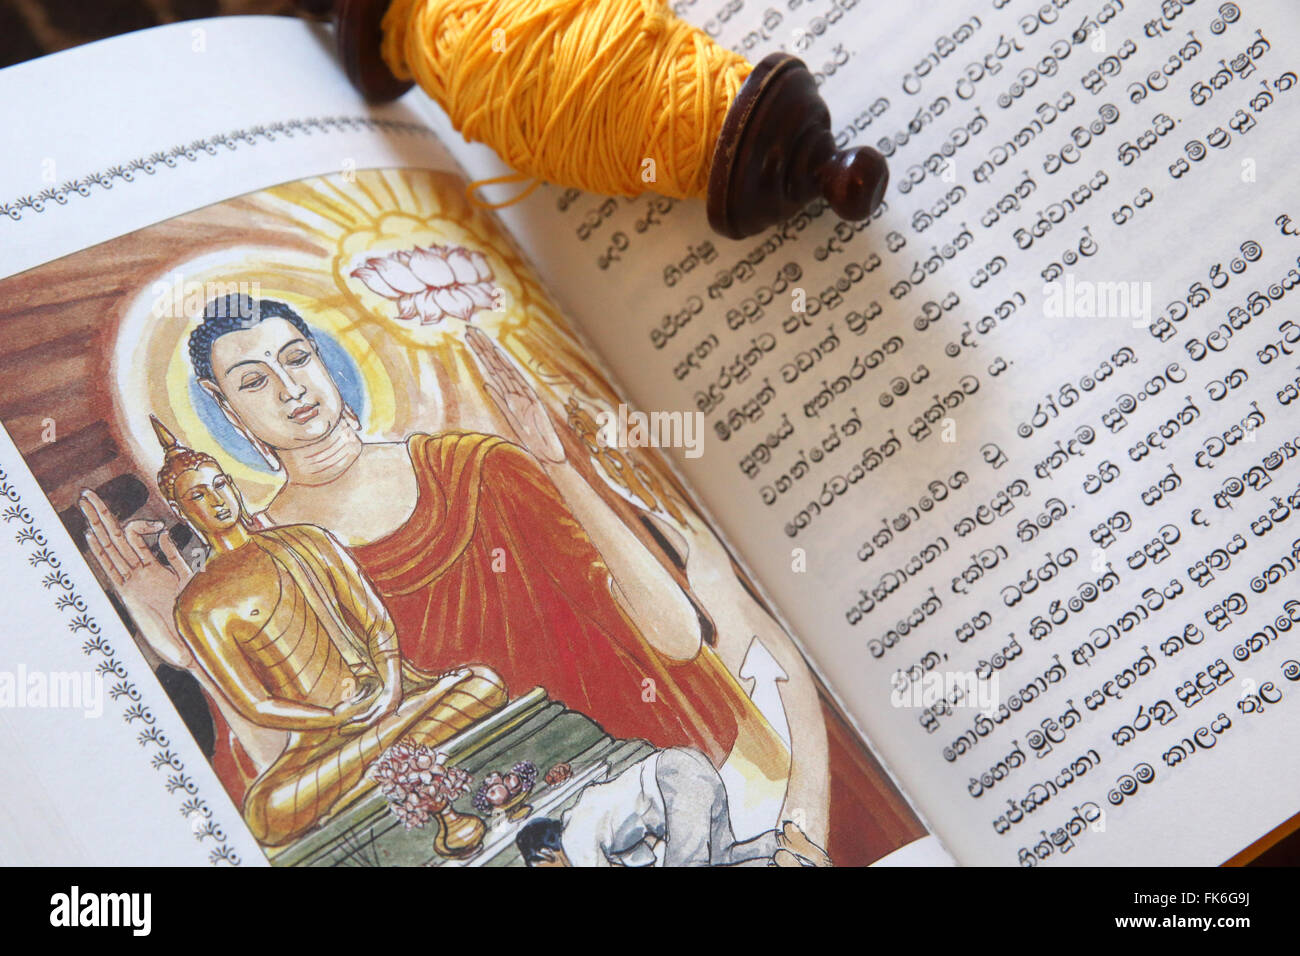 Textes sacrés bouddhistes et un rouleau de Sai-Sin (fil sacré), la vie de Siddhartha Gautama, le Bouddha suprême, Genève, Suisse Banque D'Images